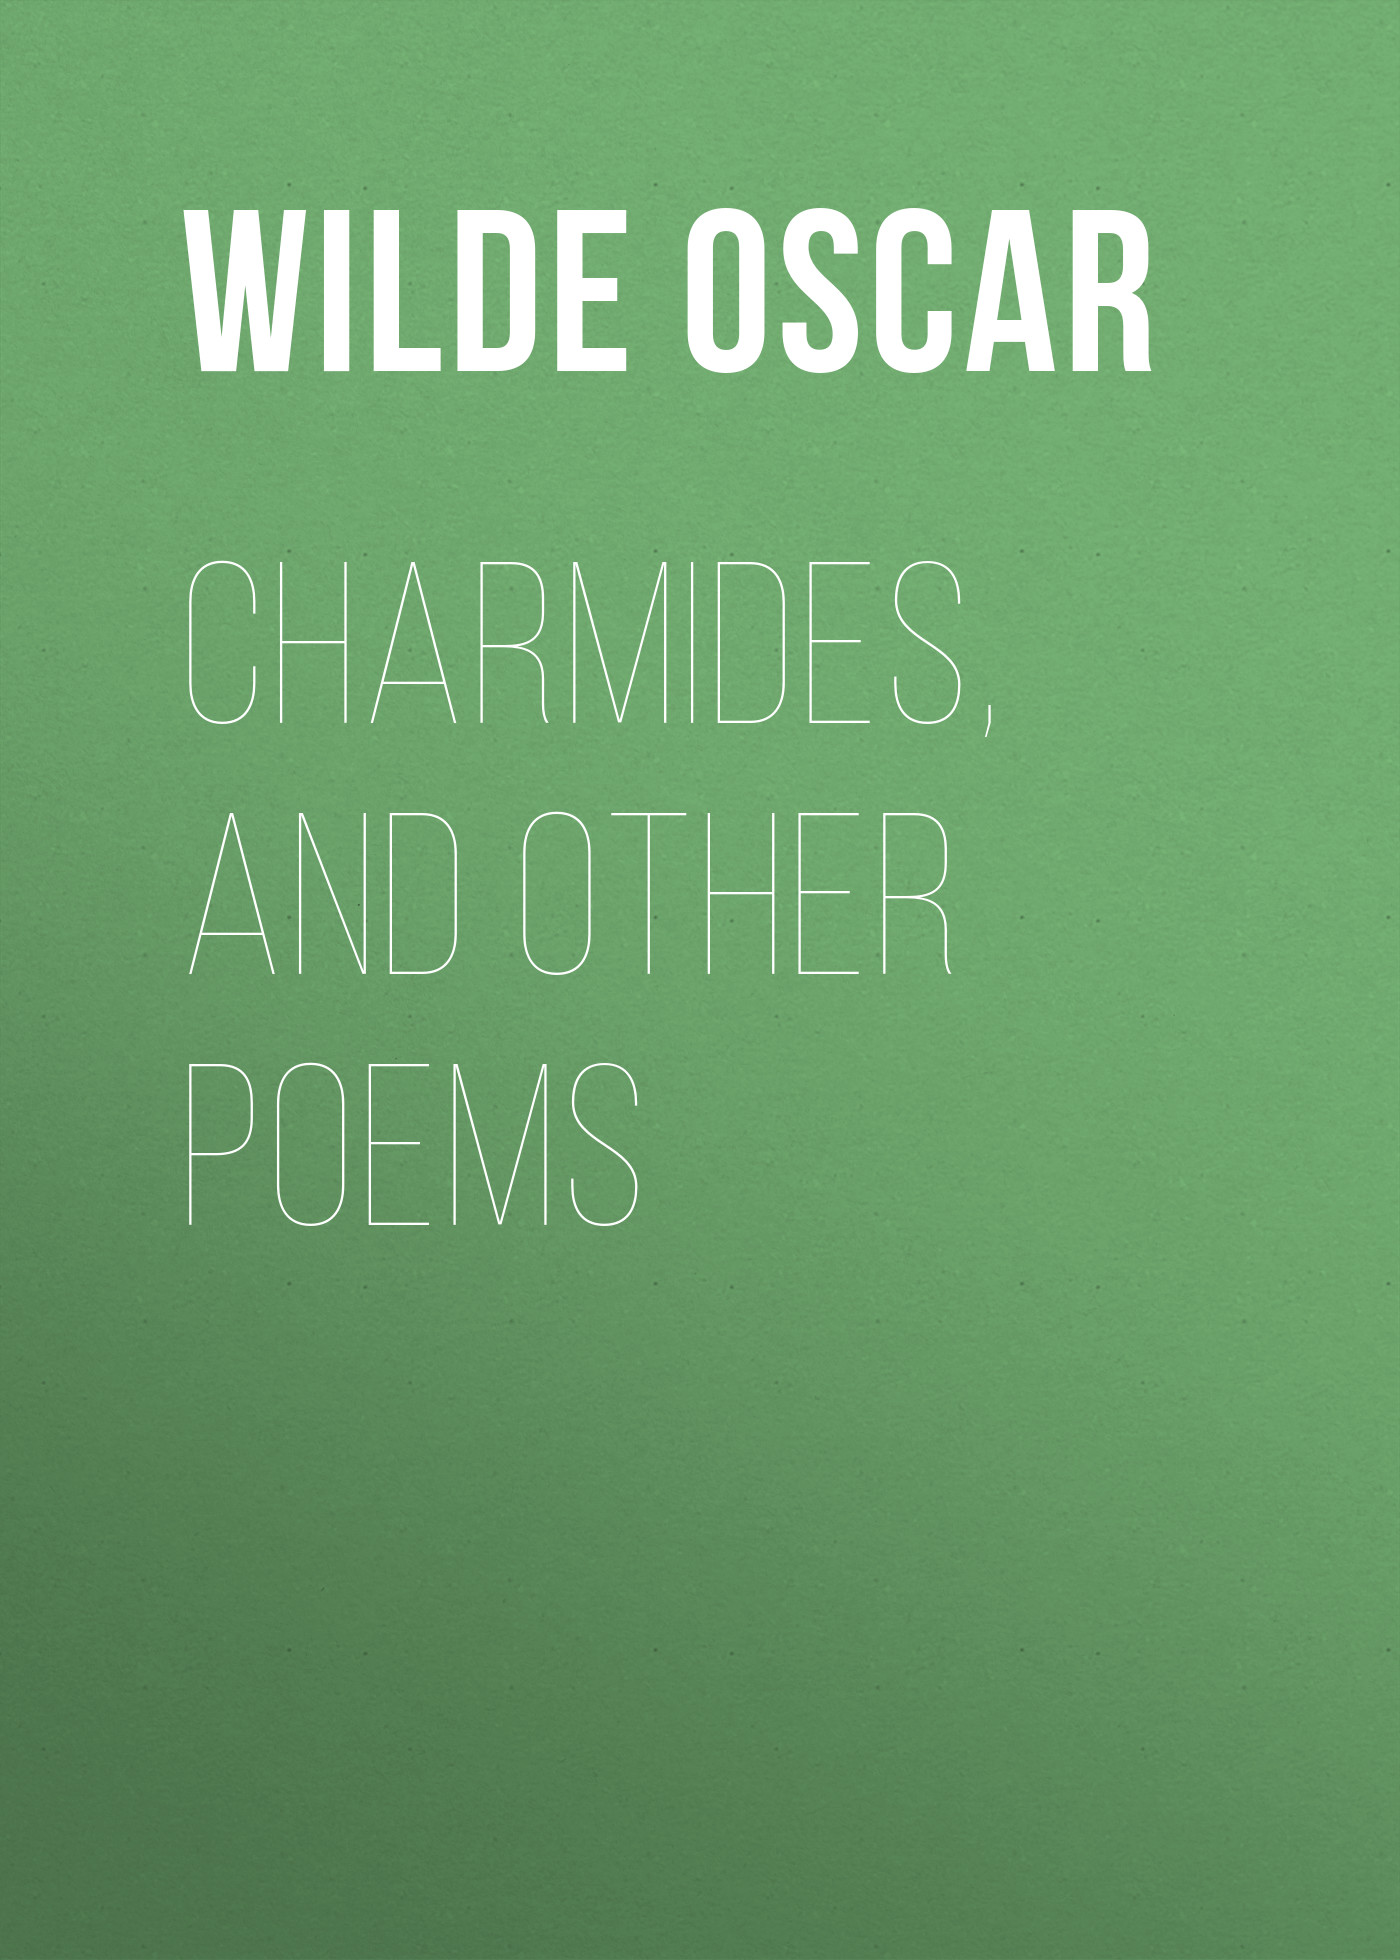 Книга Charmides, and Other Poems из серии , созданная Oscar Wilde, может относится к жанру Литература 19 века, Поэзия, Зарубежная классика, Зарубежные стихи. Стоимость электронной книги Charmides, and Other Poems с идентификатором 25559716 составляет 0 руб.